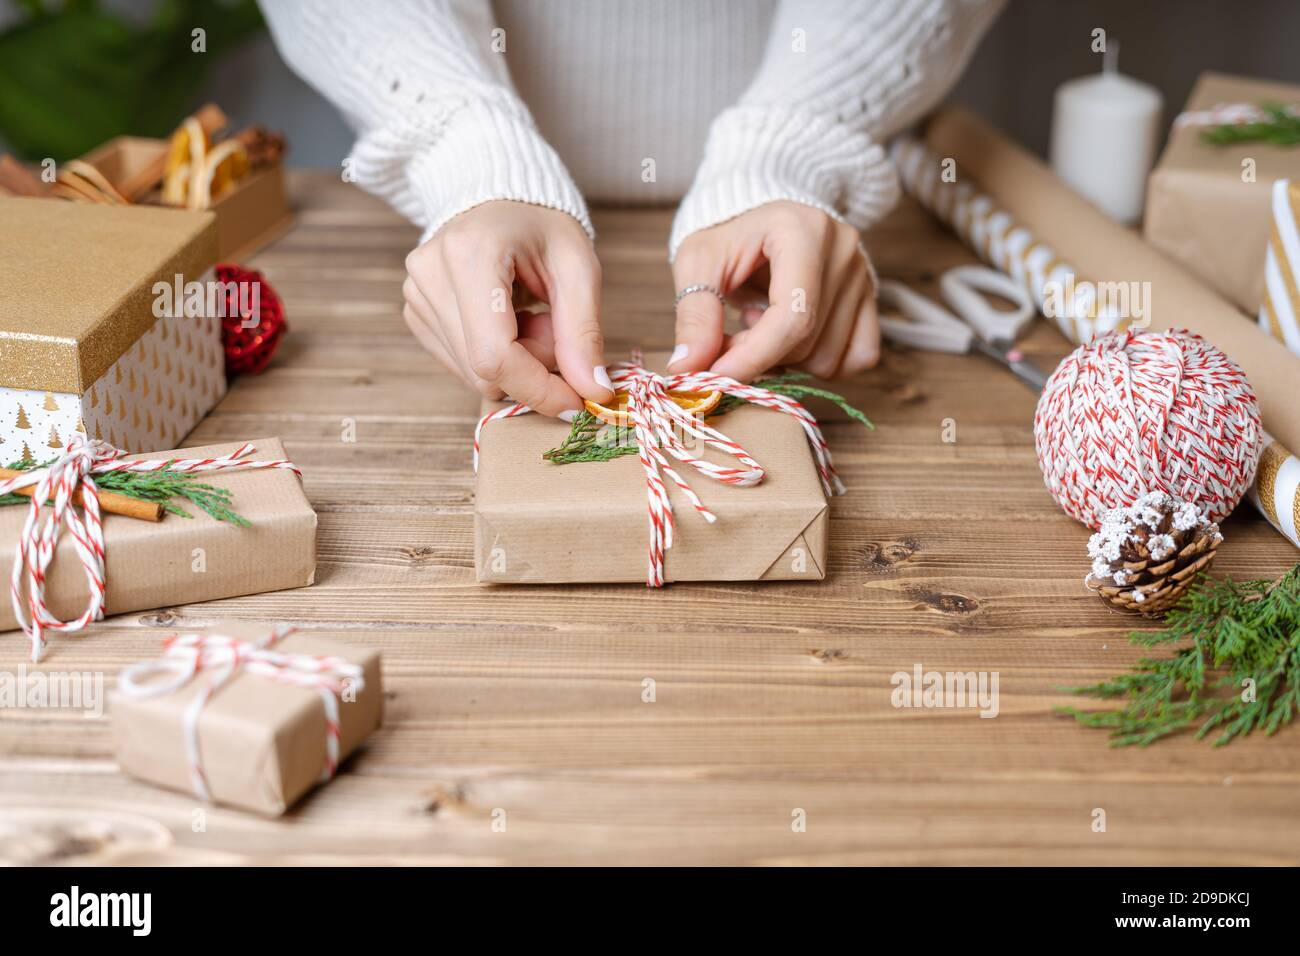 Femme s mains emballer cadeau de Noël, gros plan. Cadeaux non préparés sur  fond de bois avec éléments de décoration et articles, vue de dessus. Noël  ou Nouveau Photo Stock - Alamy